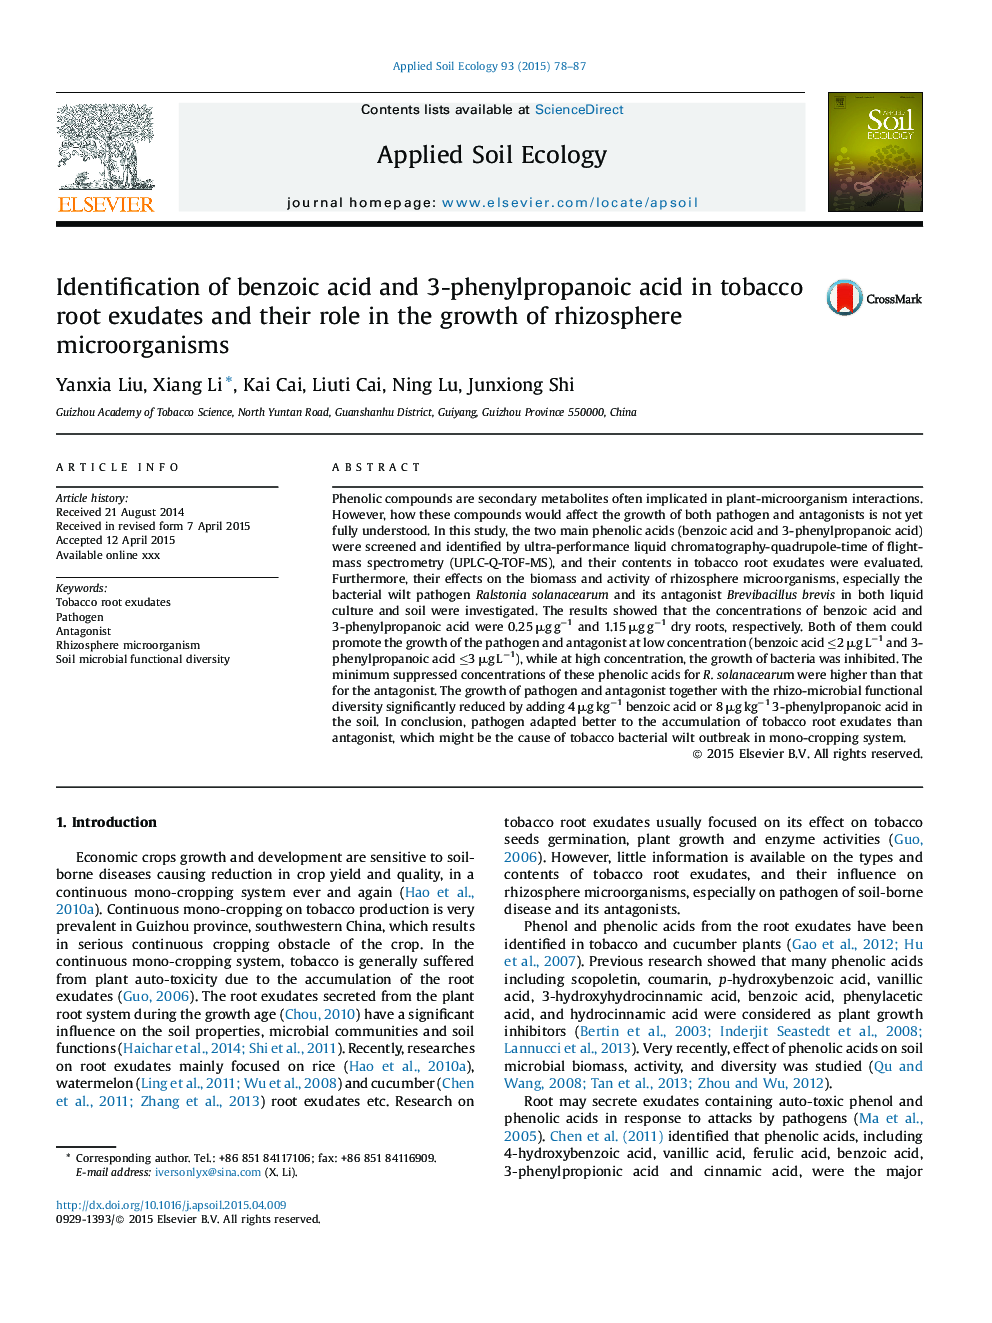 شناسایی اسید بنزوئیک و اسید 3-فنیل پروپانوئیک در ریشه های توتون و نقش آن در رشد میکروارگانیسم های ریزوسفر 